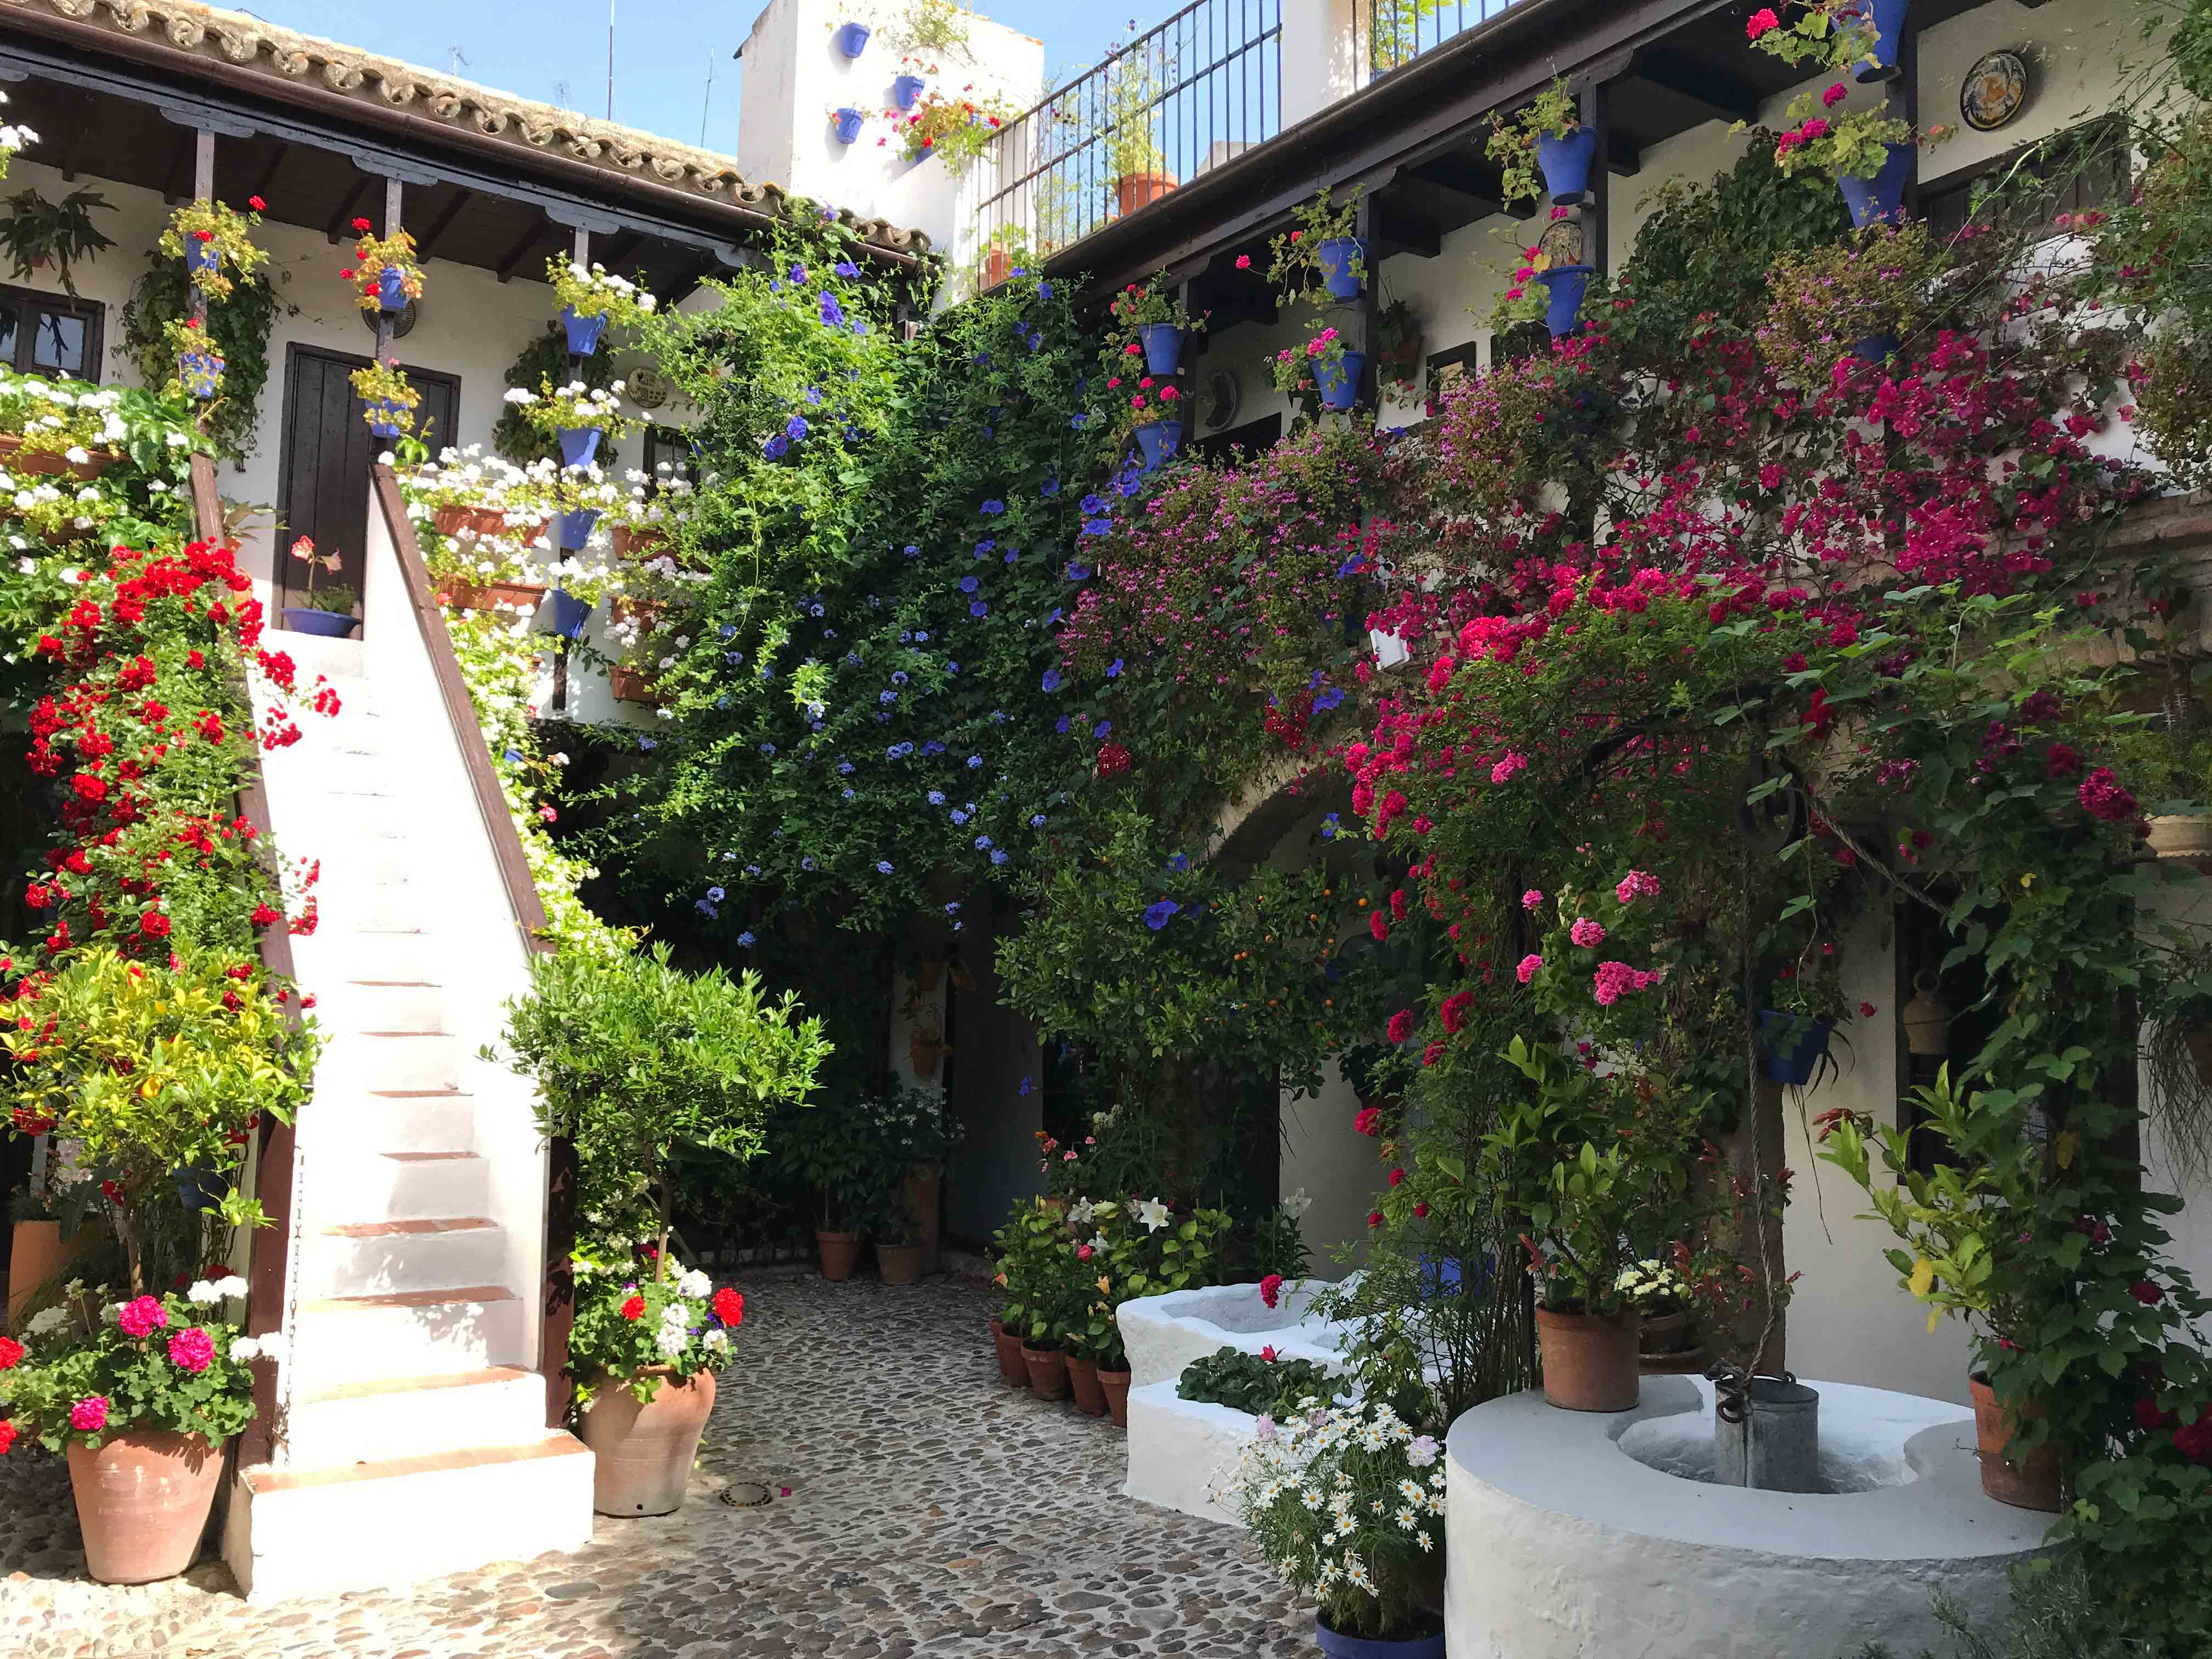 Los patios de Córdoba en cuarentena: una ruta por el emblemático barrio de San Basilio